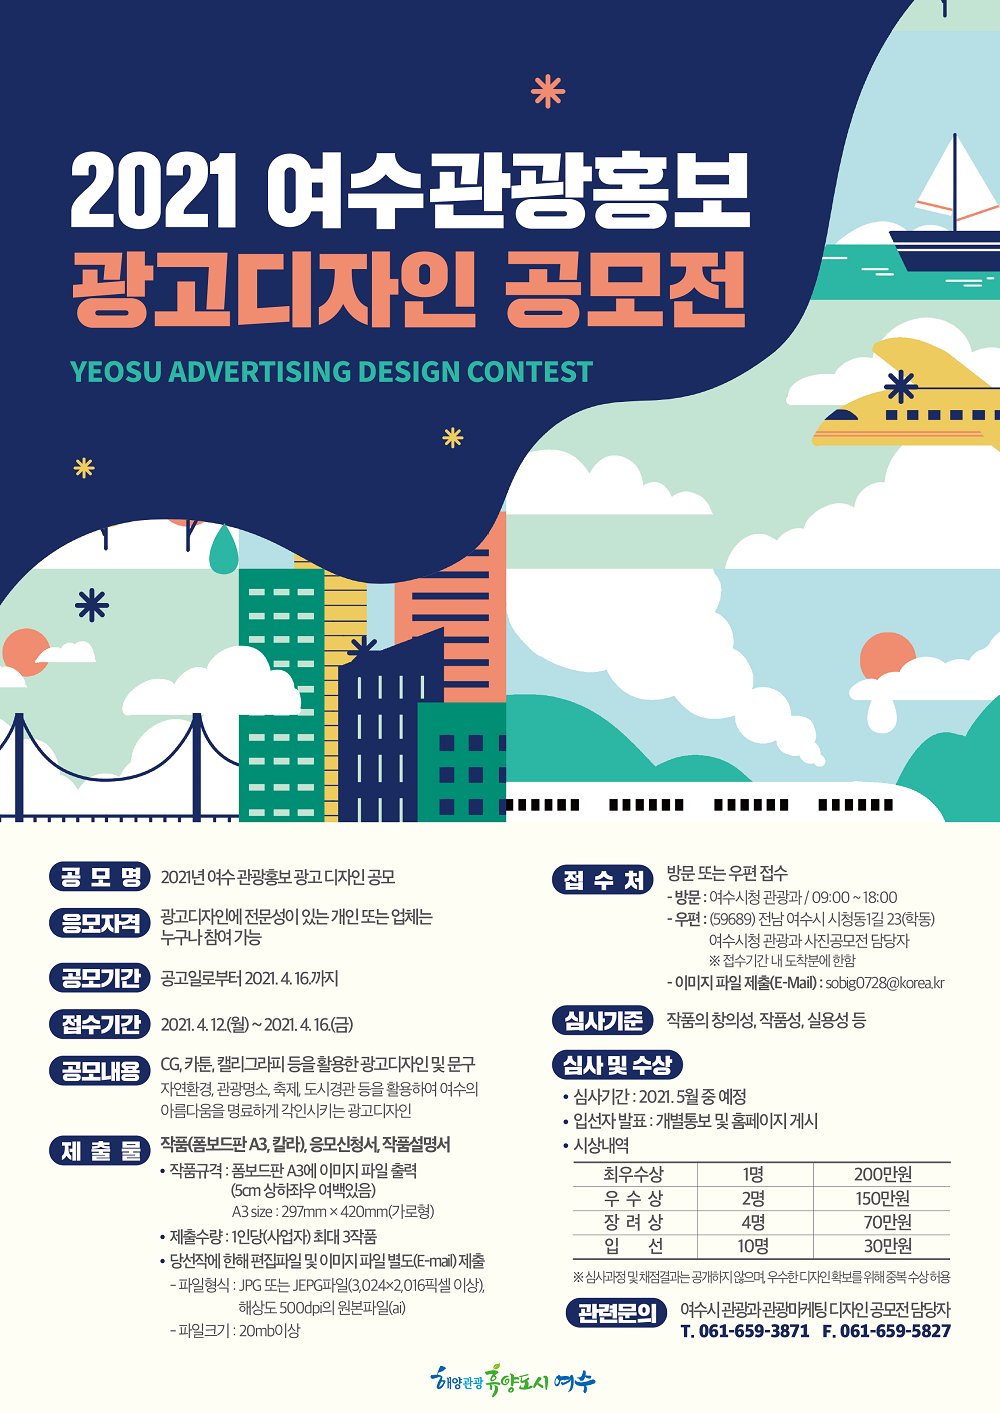 [공모전] 2021년 여수관광 홍보 광고디자인 공모전 안내